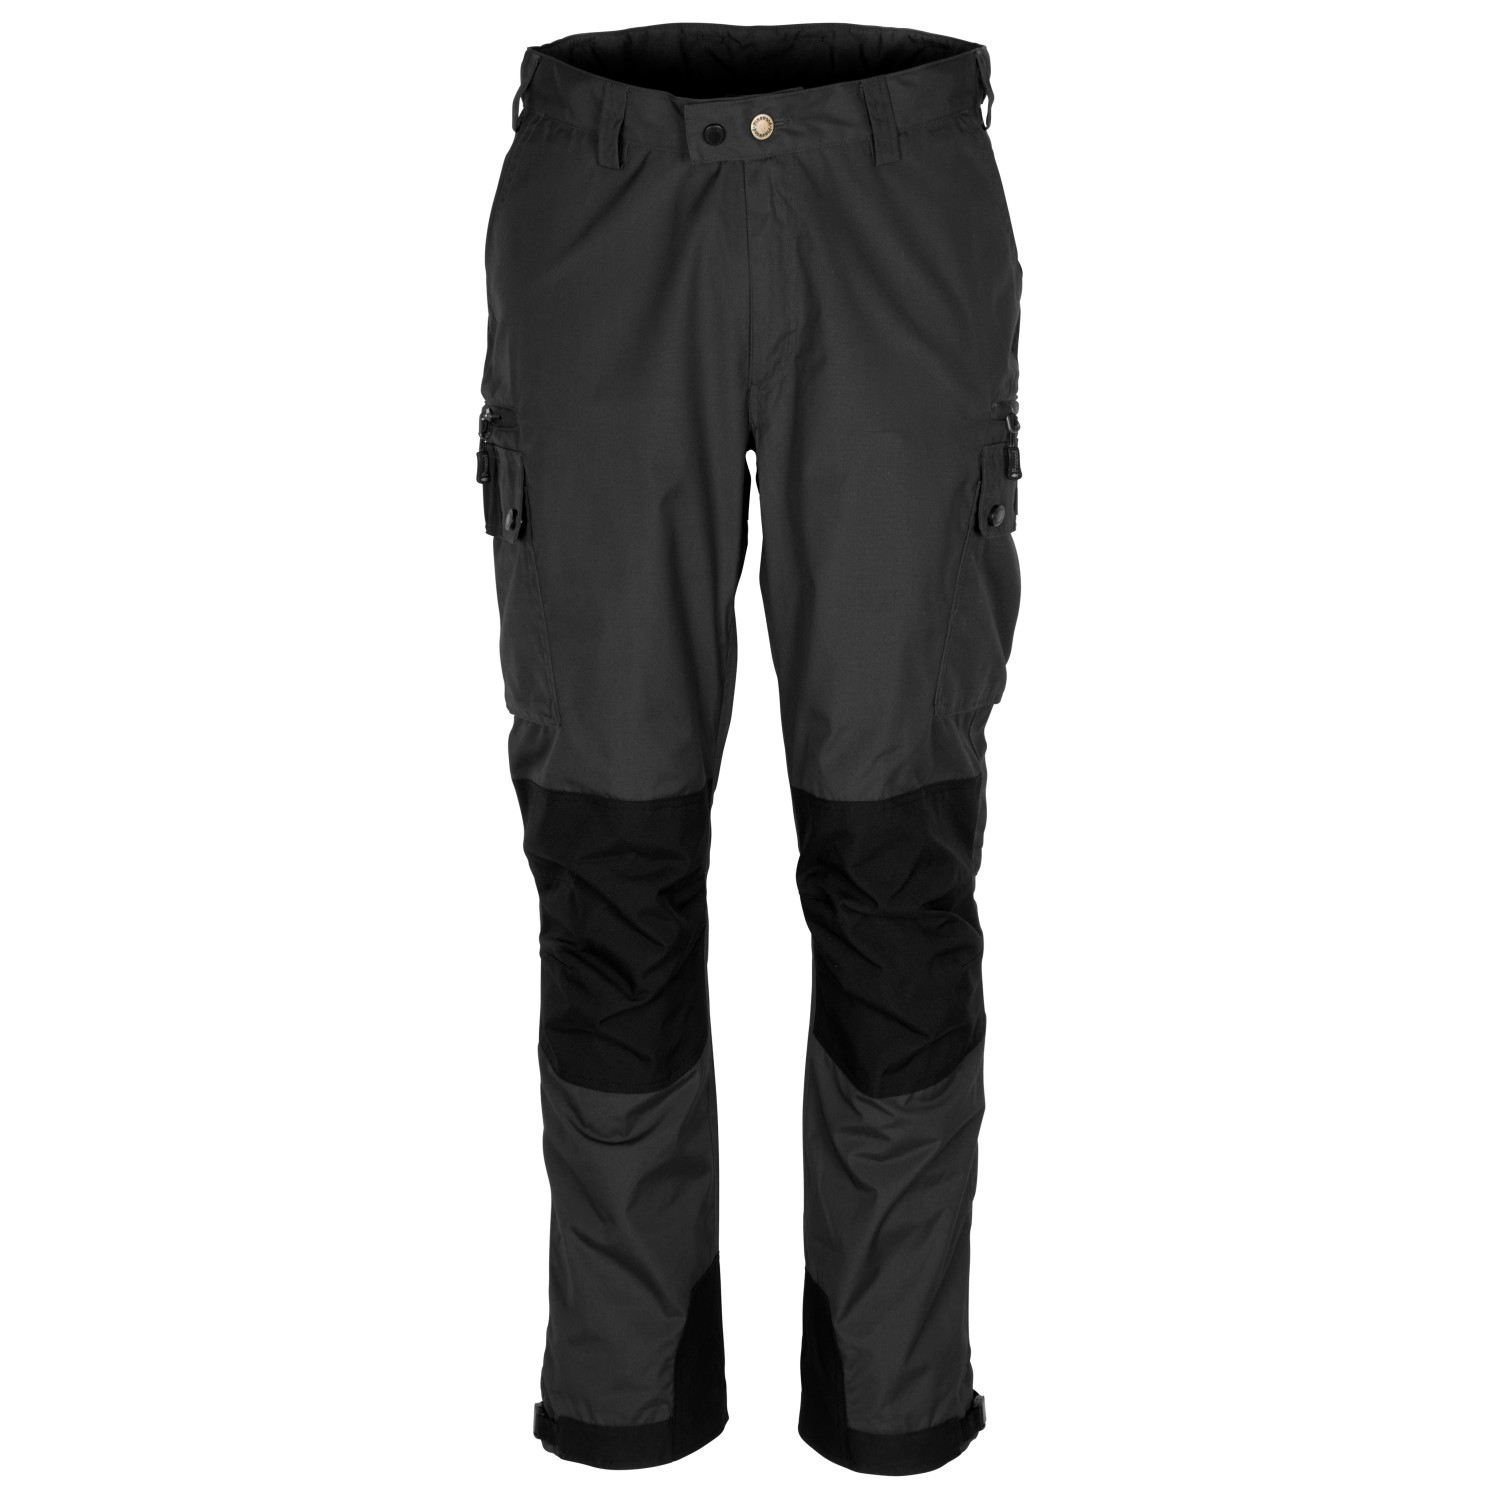 Трекинговые брюки Pinewood Lappland Extreme 2 0, цвет Dark Anthracite/Black